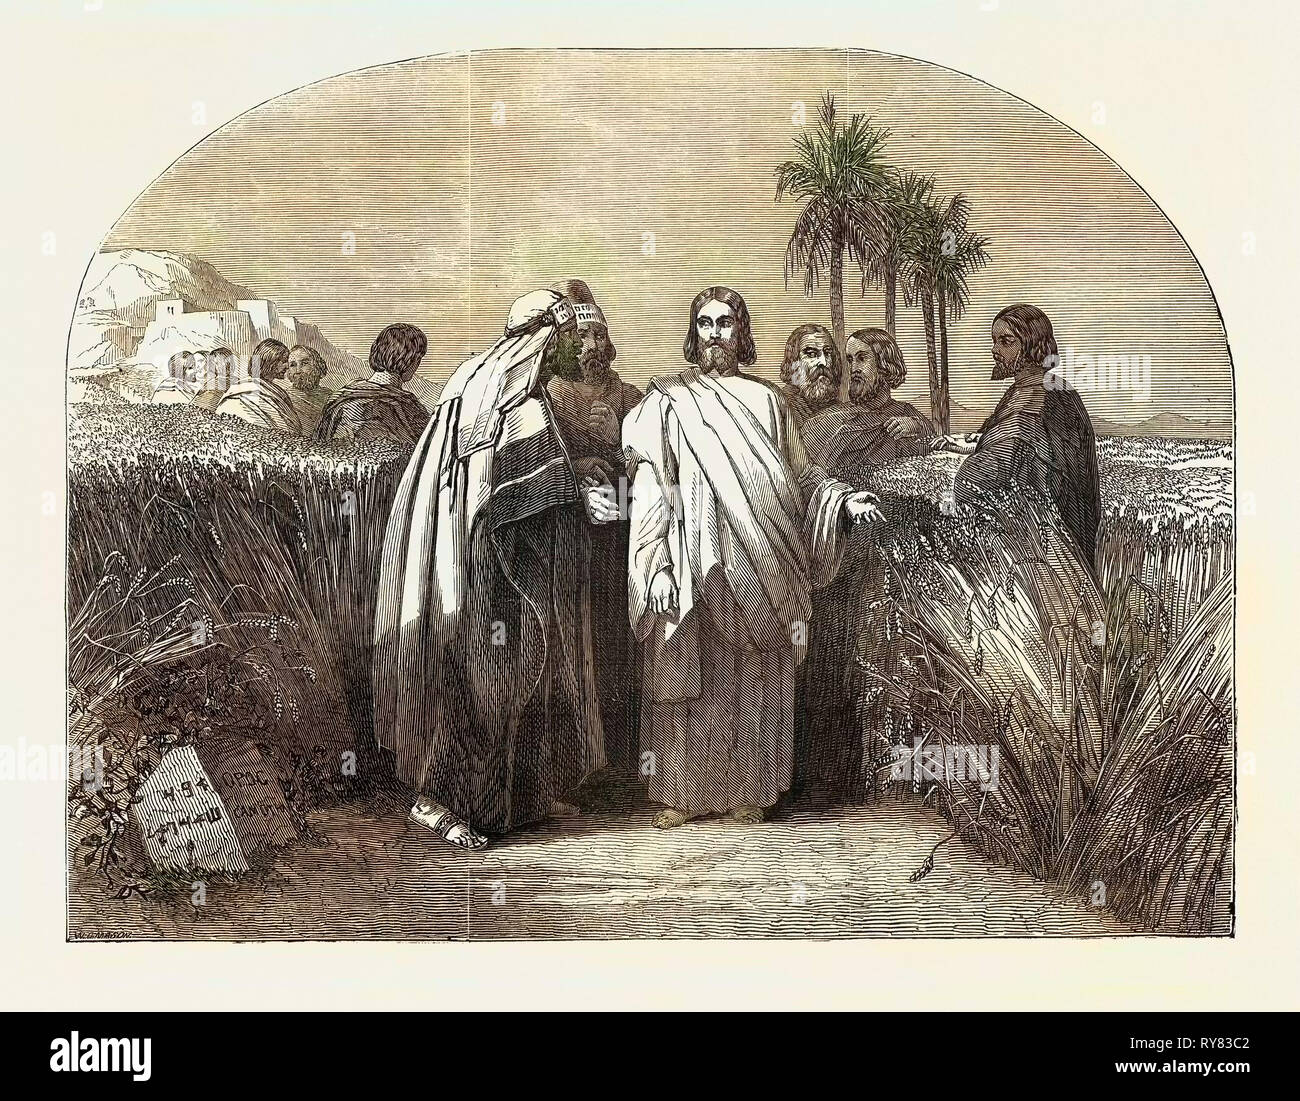 Cristo con los discípulos en el campo de maíz, exposición de la nueva sociedad de pintores en los colores del agua Foto de stock